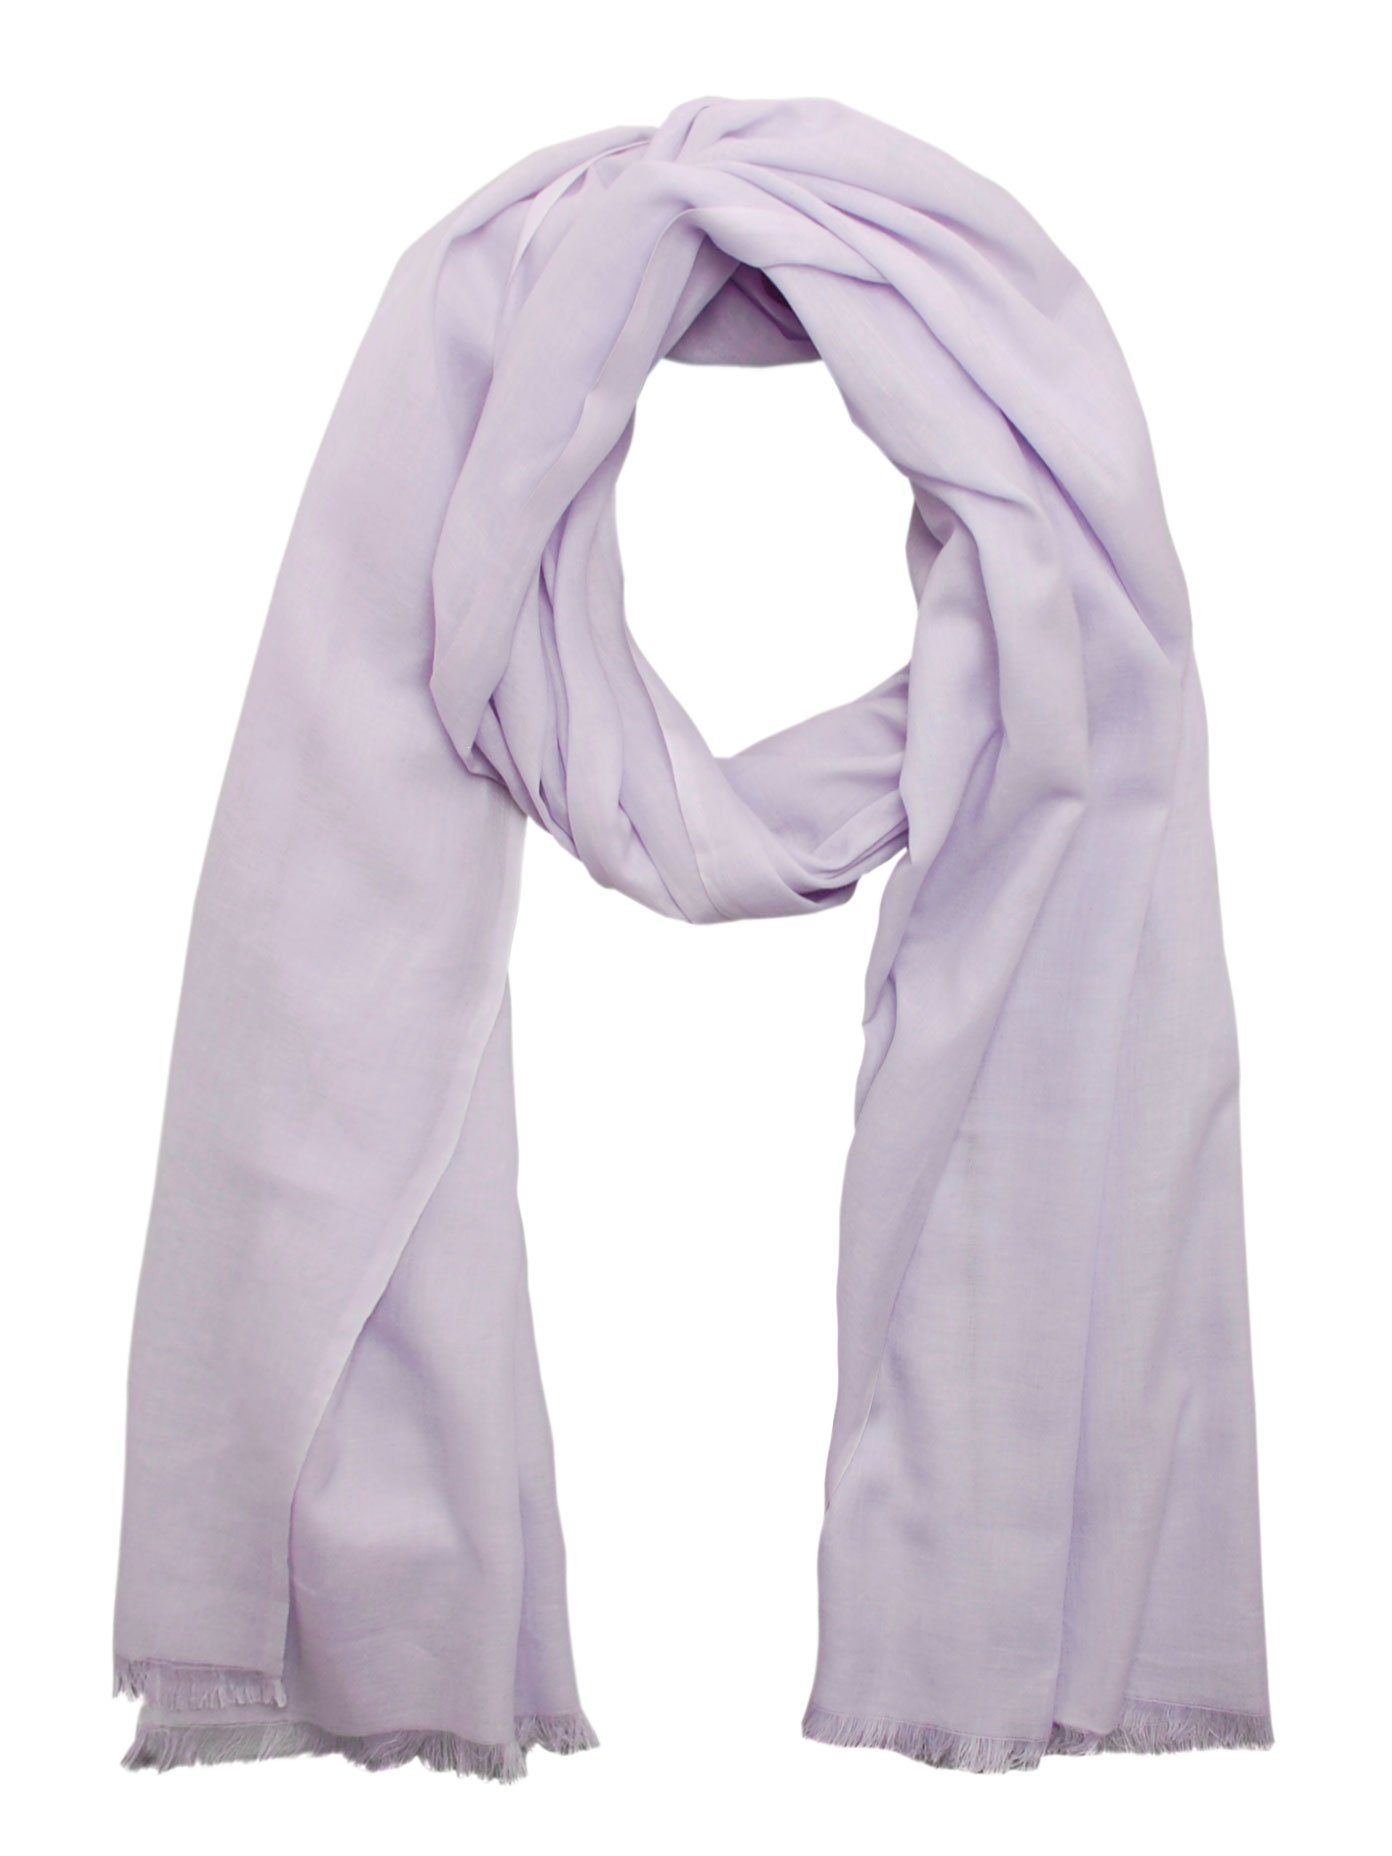 Bovari Schal Damen-Schal aus handgewebt, - in XL Sommerschal cm flieder - Größe dünn 100% leicht, Bio-Baumwolle 180x70 - gekämmter atmungsaktiv